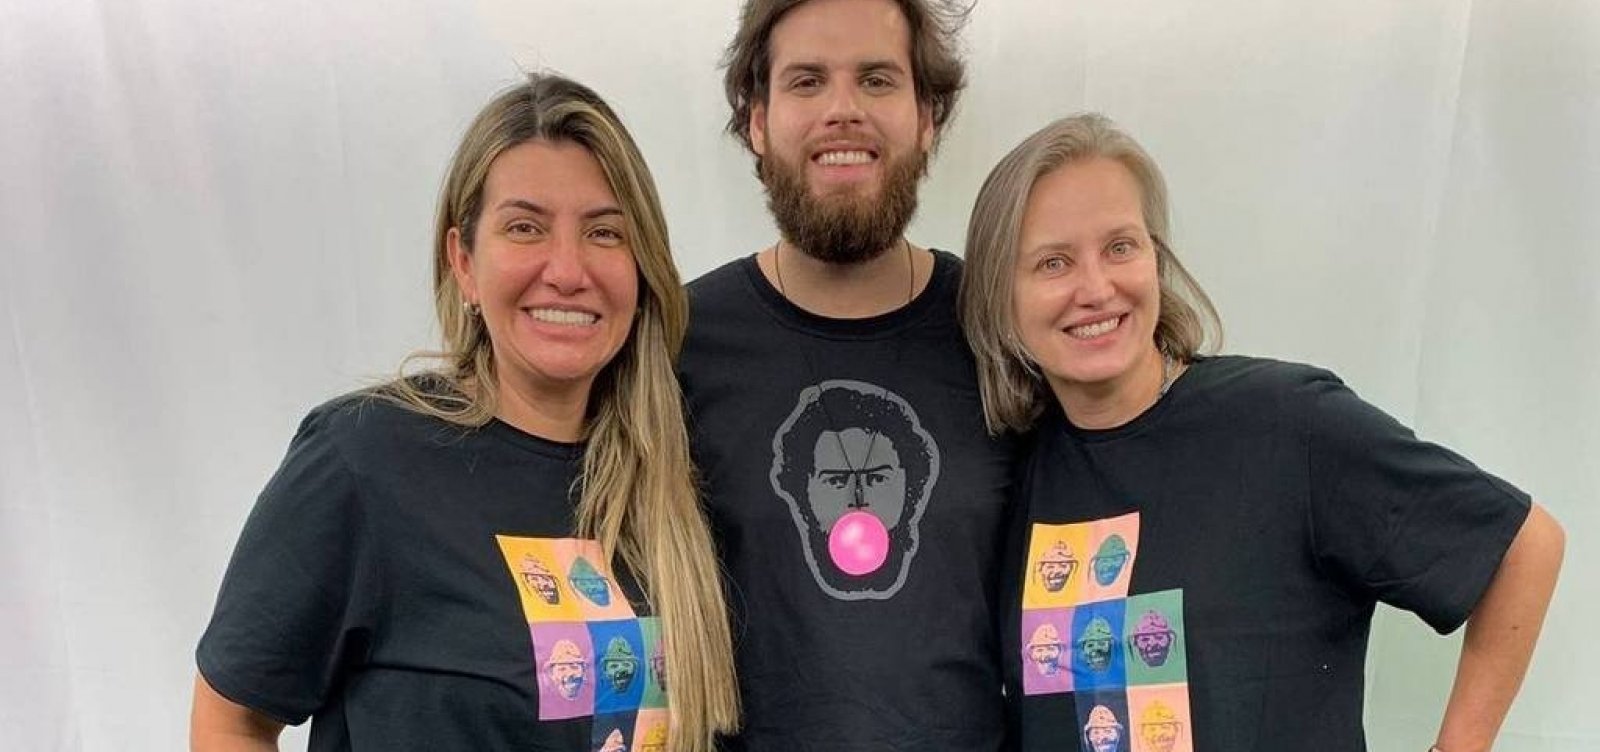 Com preços em torno de R$150, nora e neto de Lula lançam grife de moda inspirada no petista